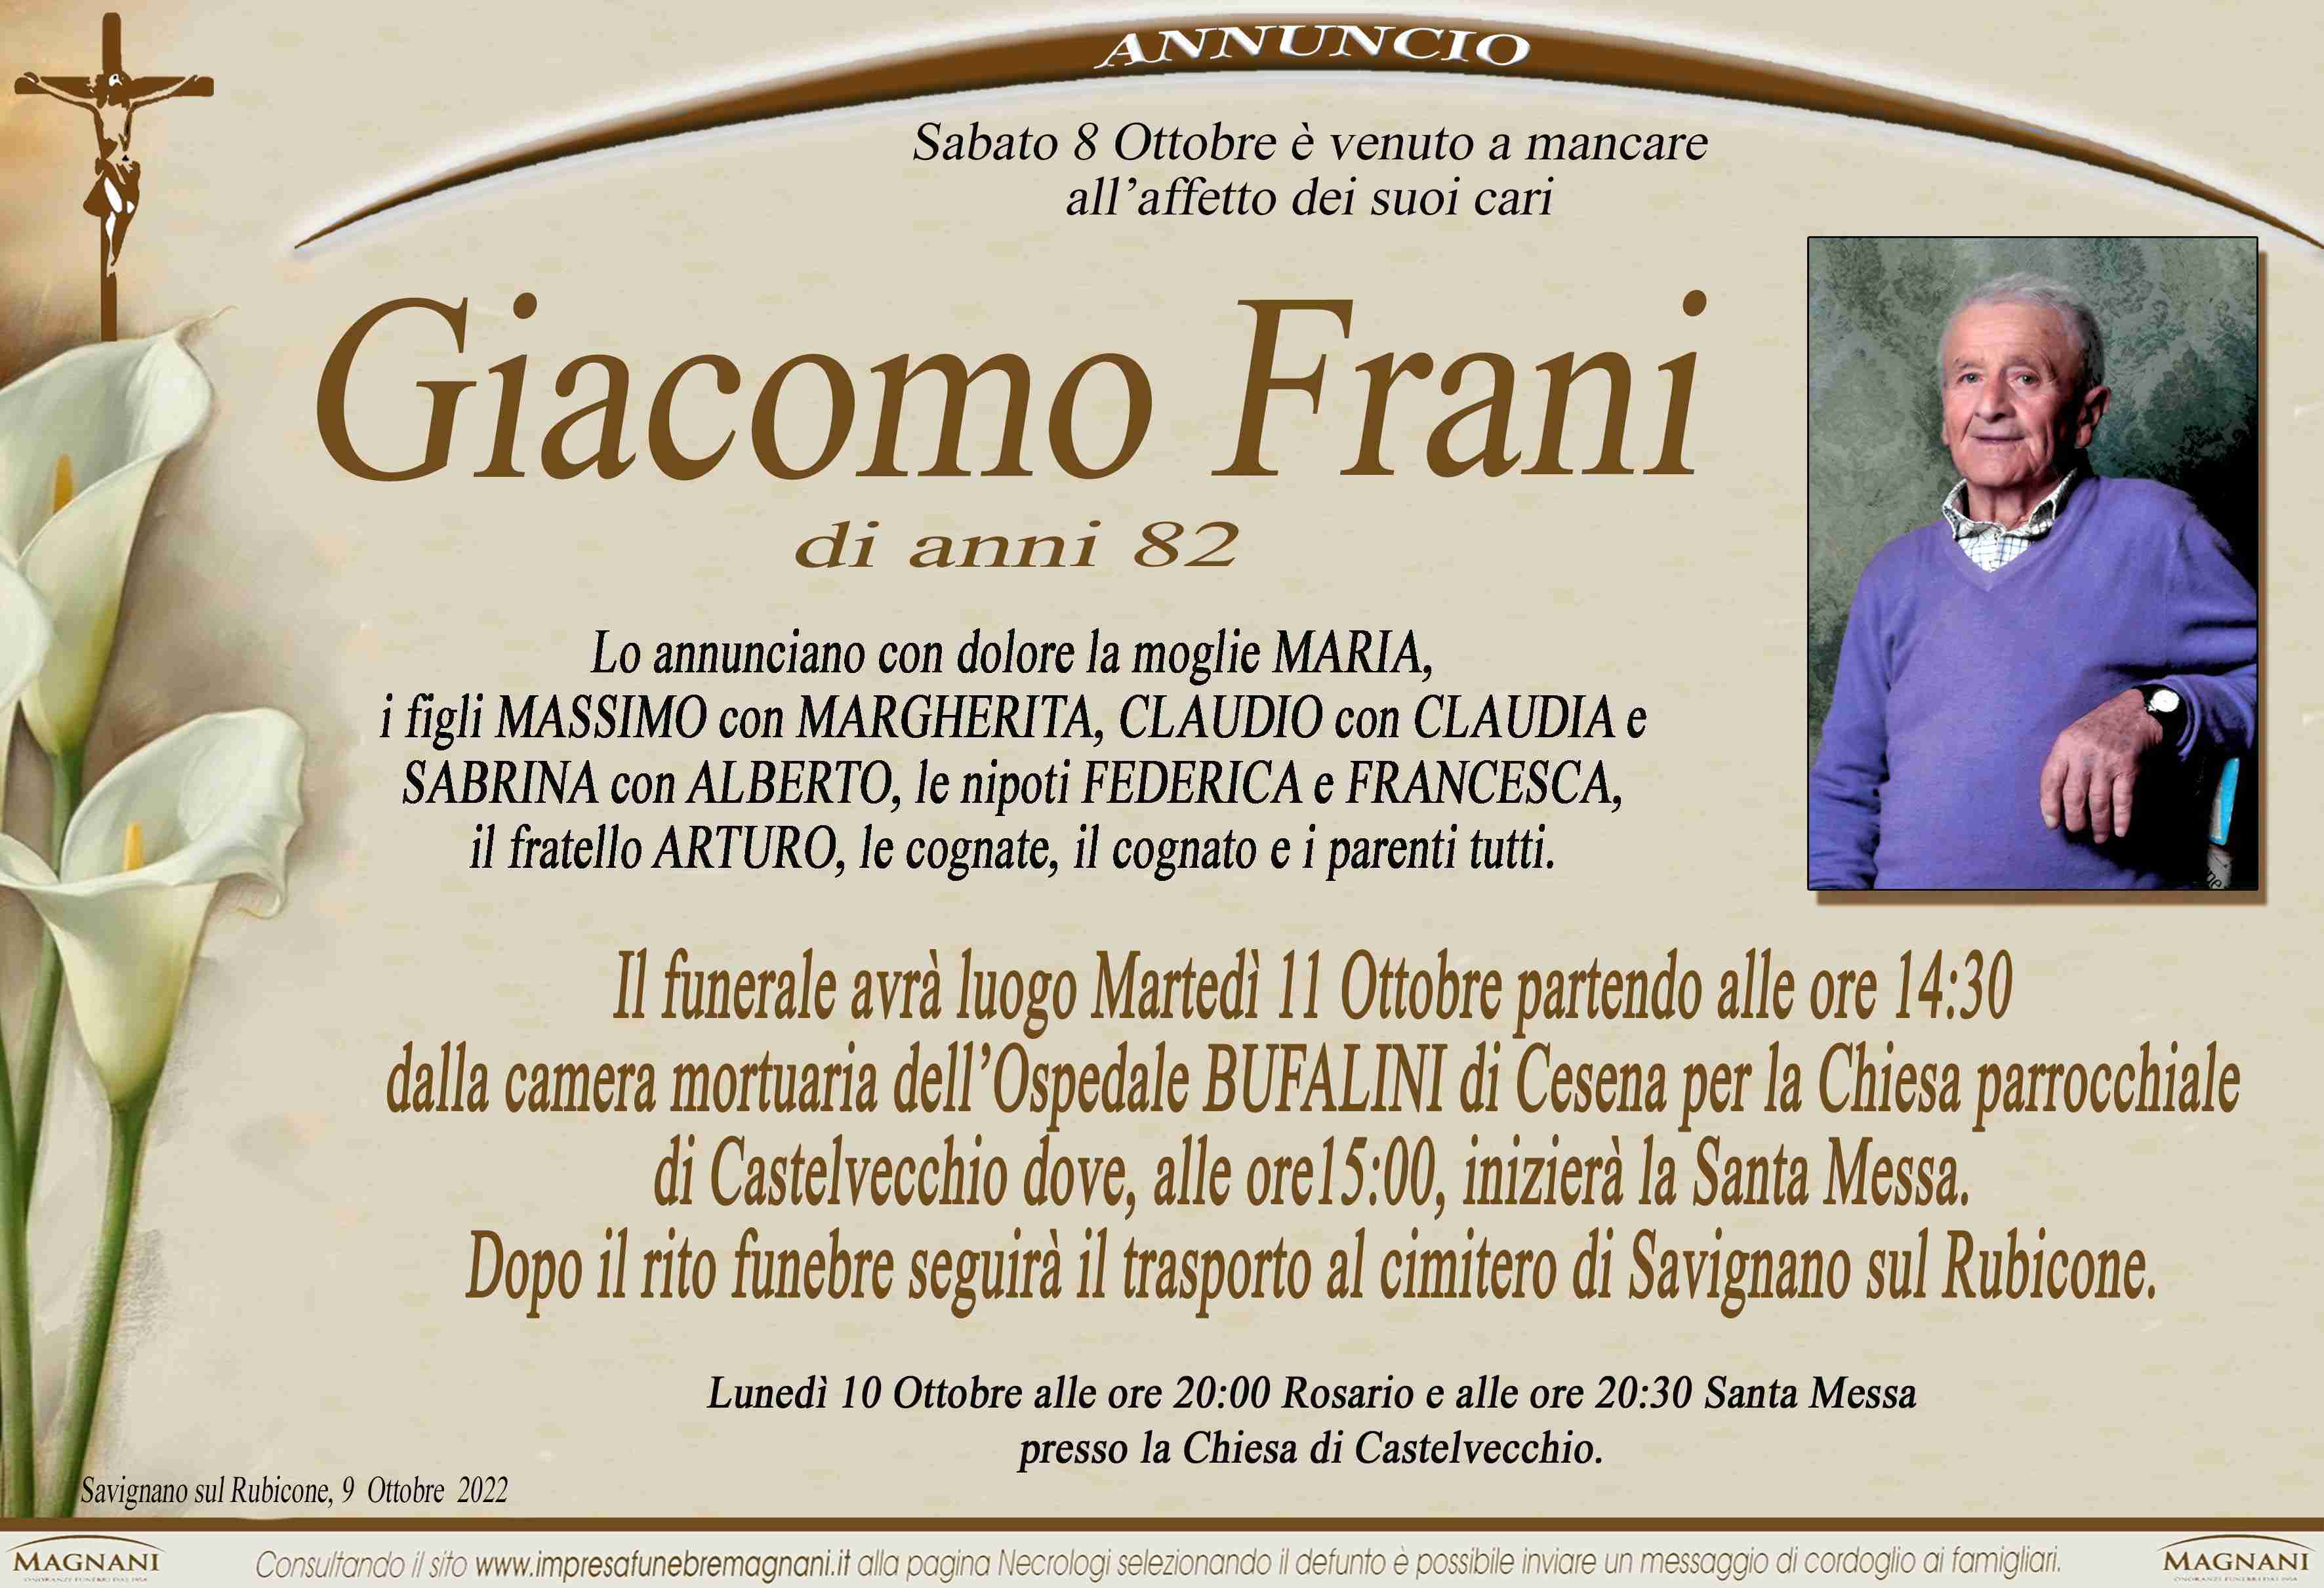 Giacomo Frani